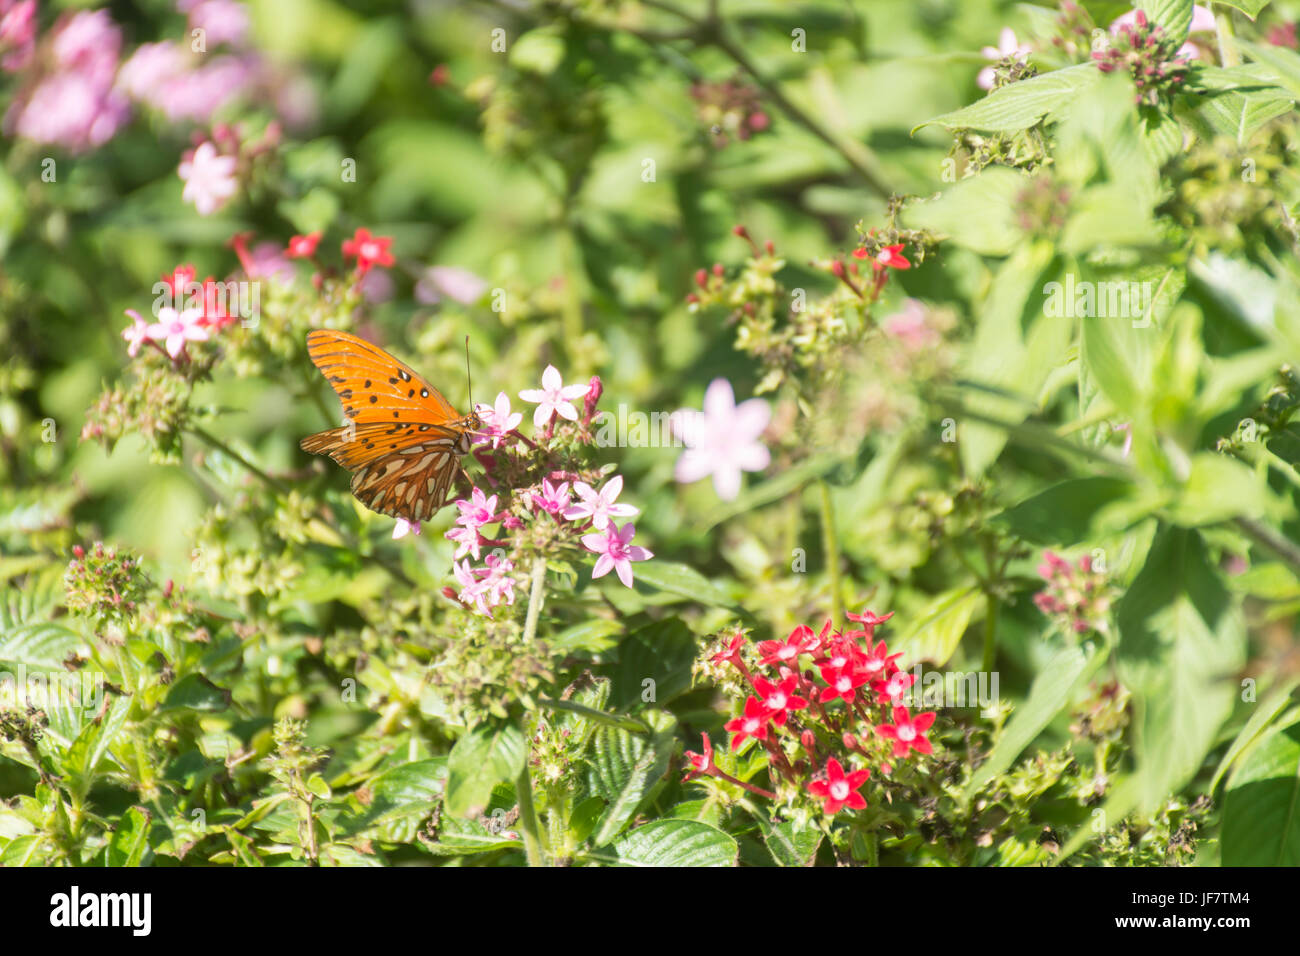 Gulf fritillary butterfly (Agraulis vanillae) feeding on pentas lanceolata flowers Stock Photo